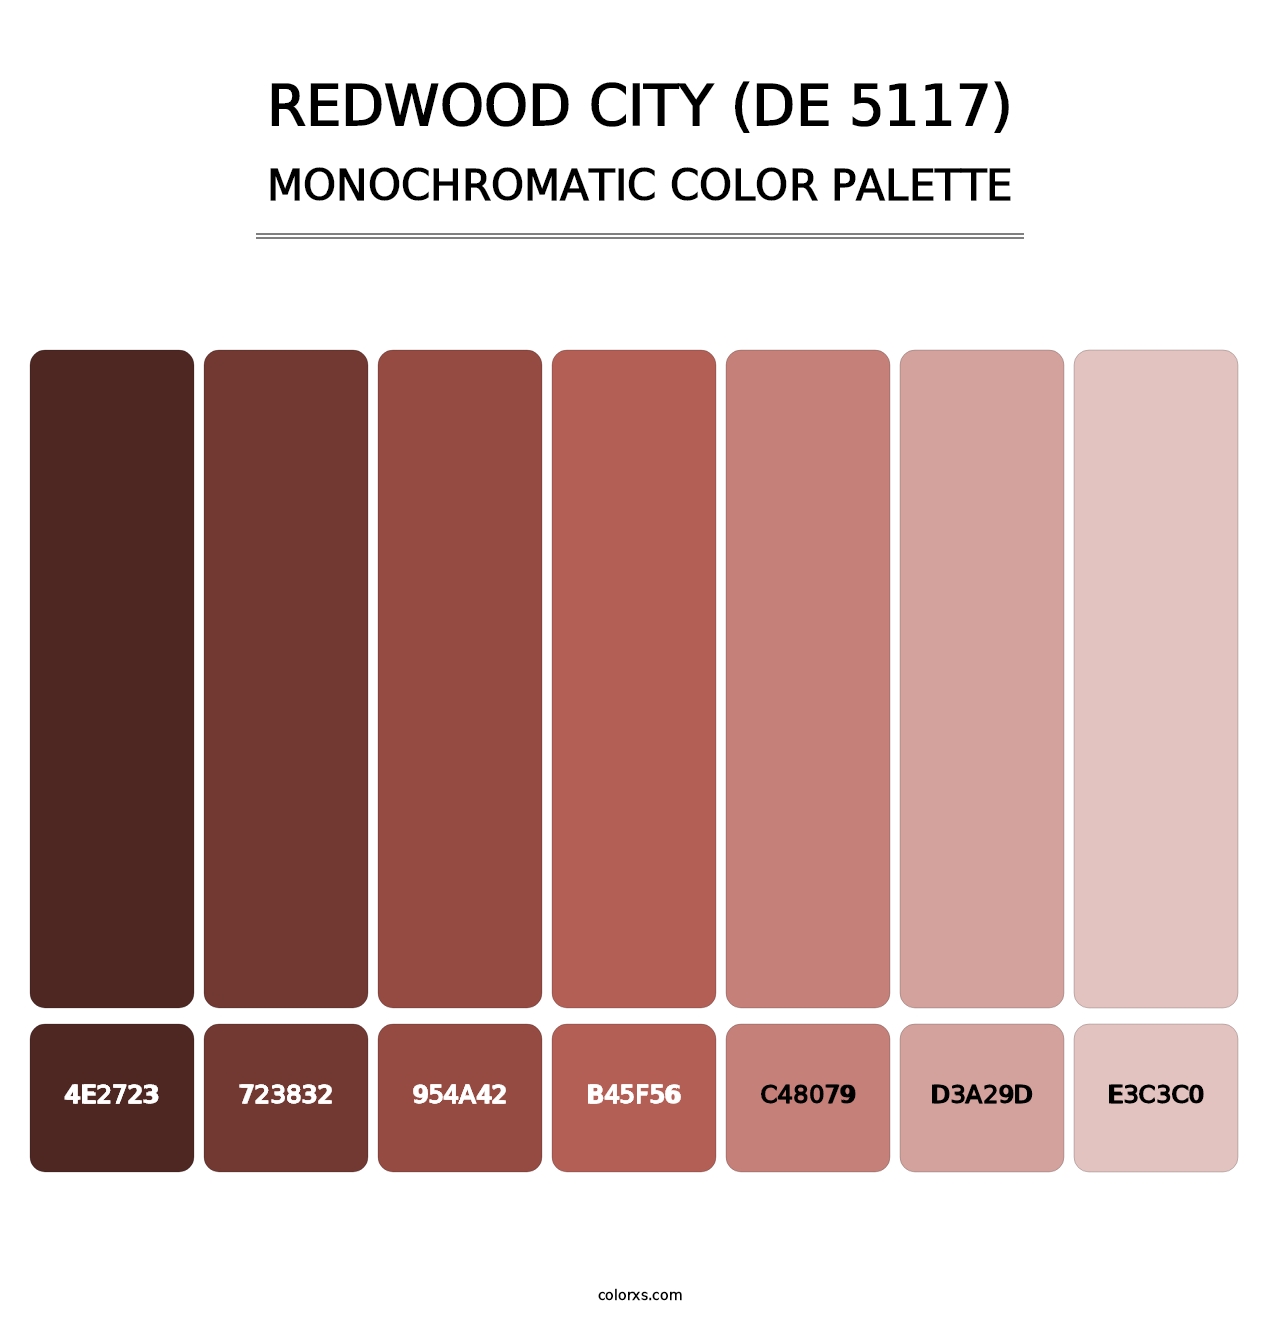 Redwood City (DE 5117) - Monochromatic Color Palette